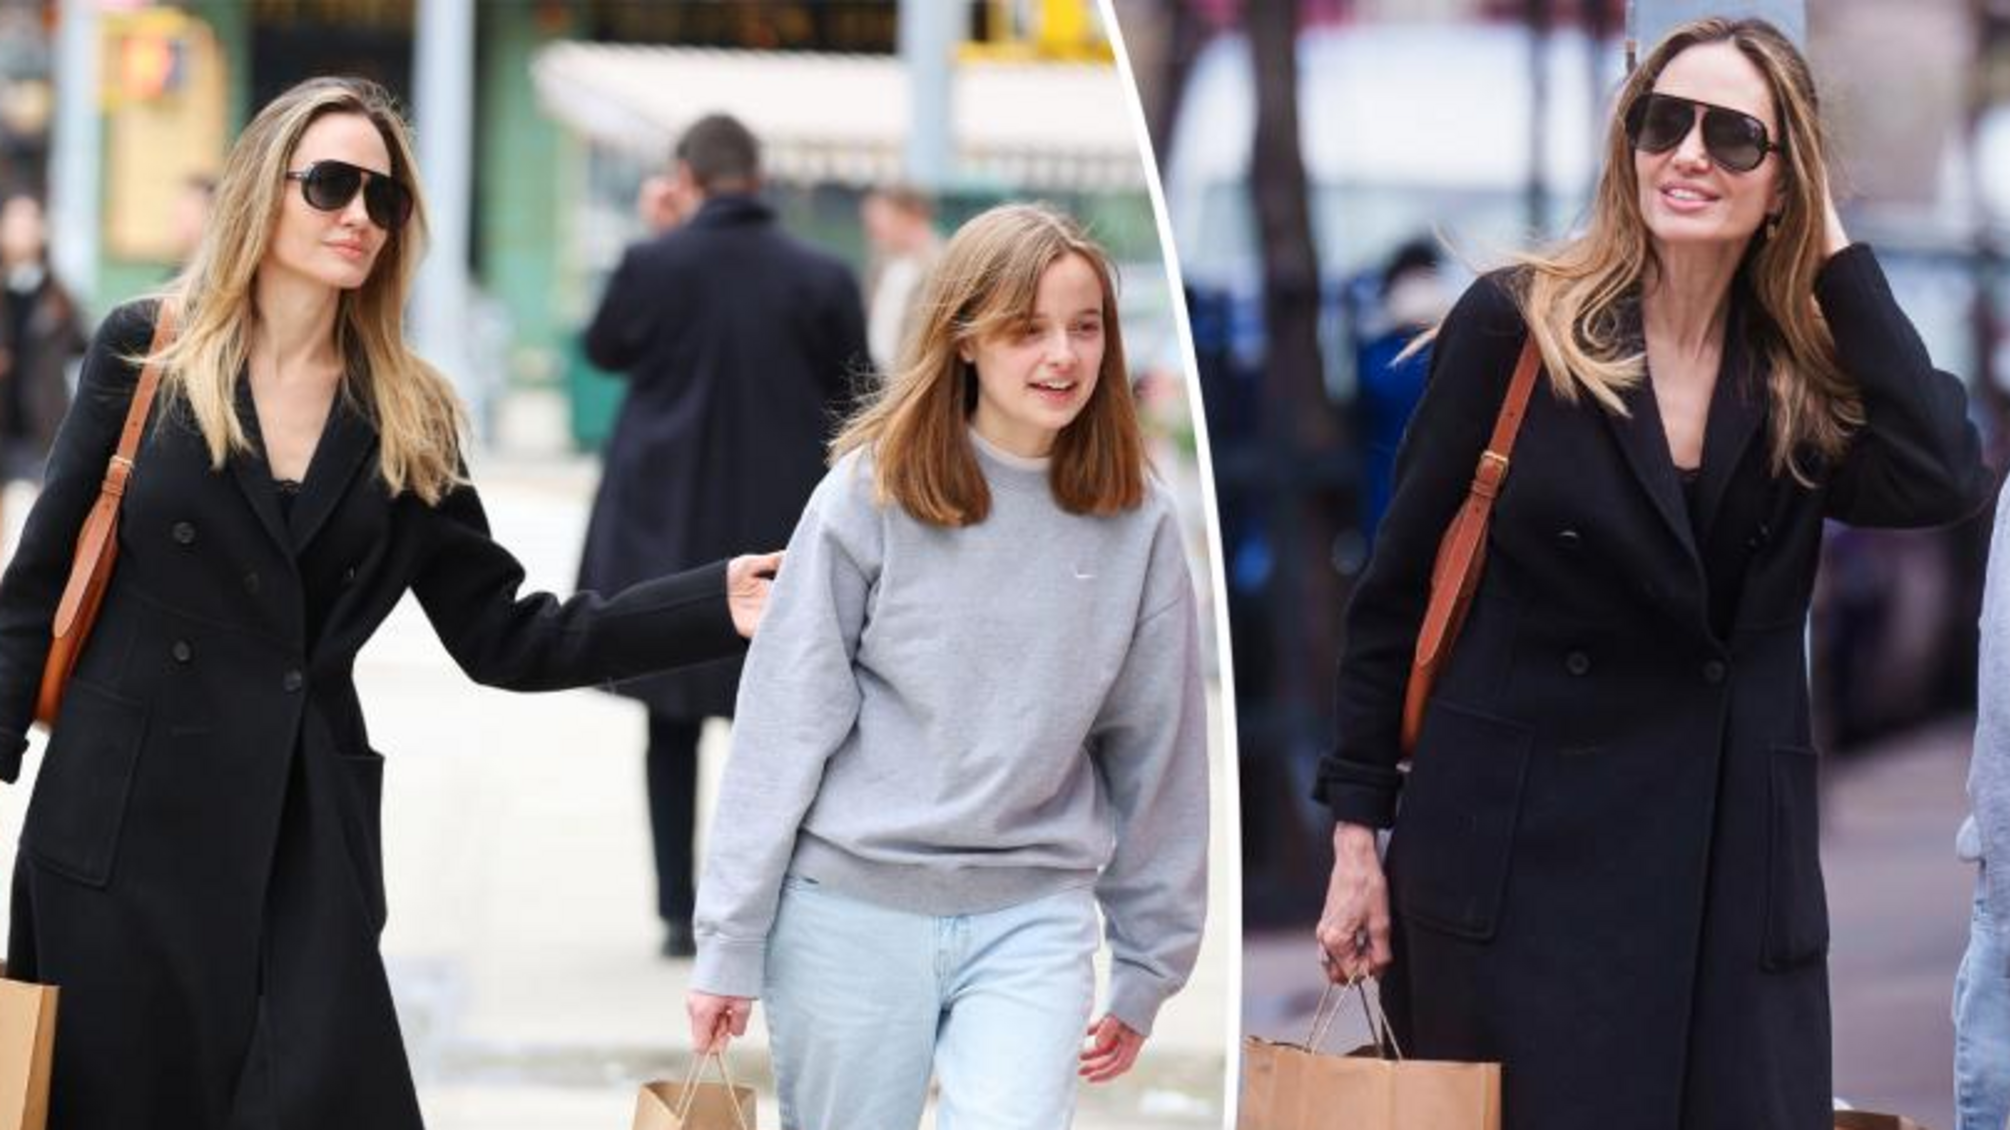 Анджелина Джоли и ее дочь Вивьен отправились на шоппинг на фоне судебного скандала с Брэдом Питтом